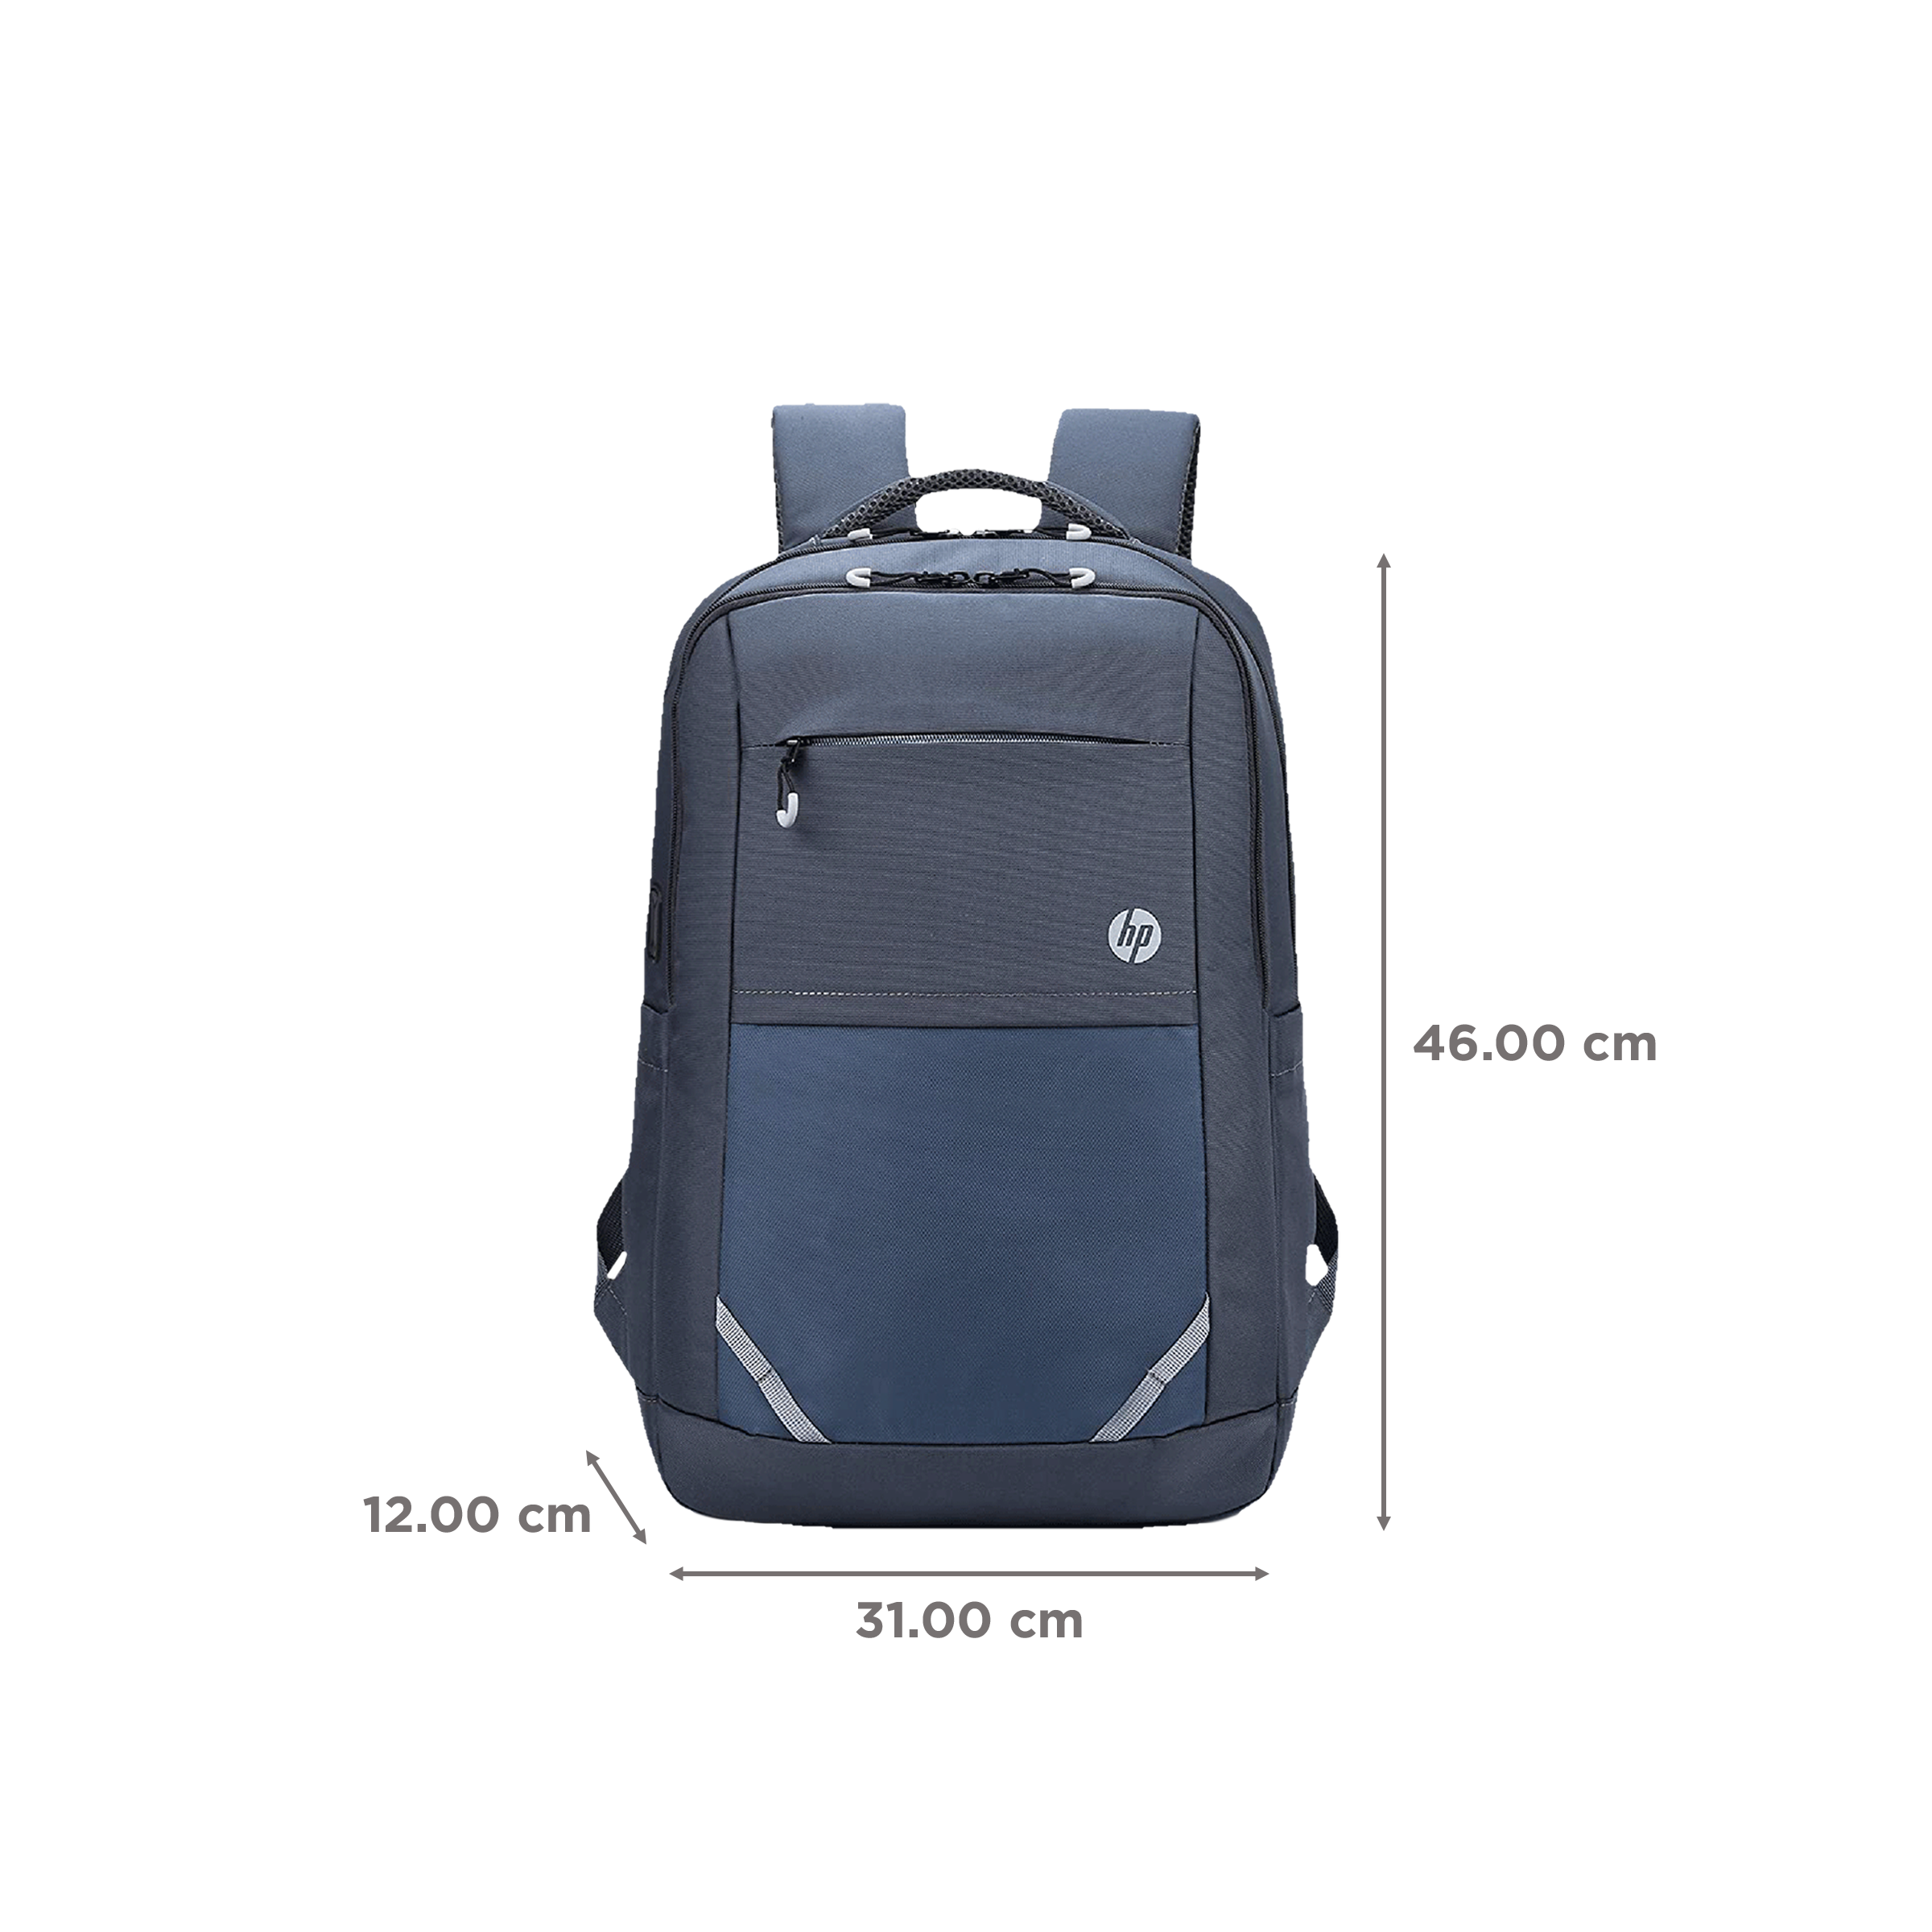 156 Hp Laptop Bag Capacity 30 L